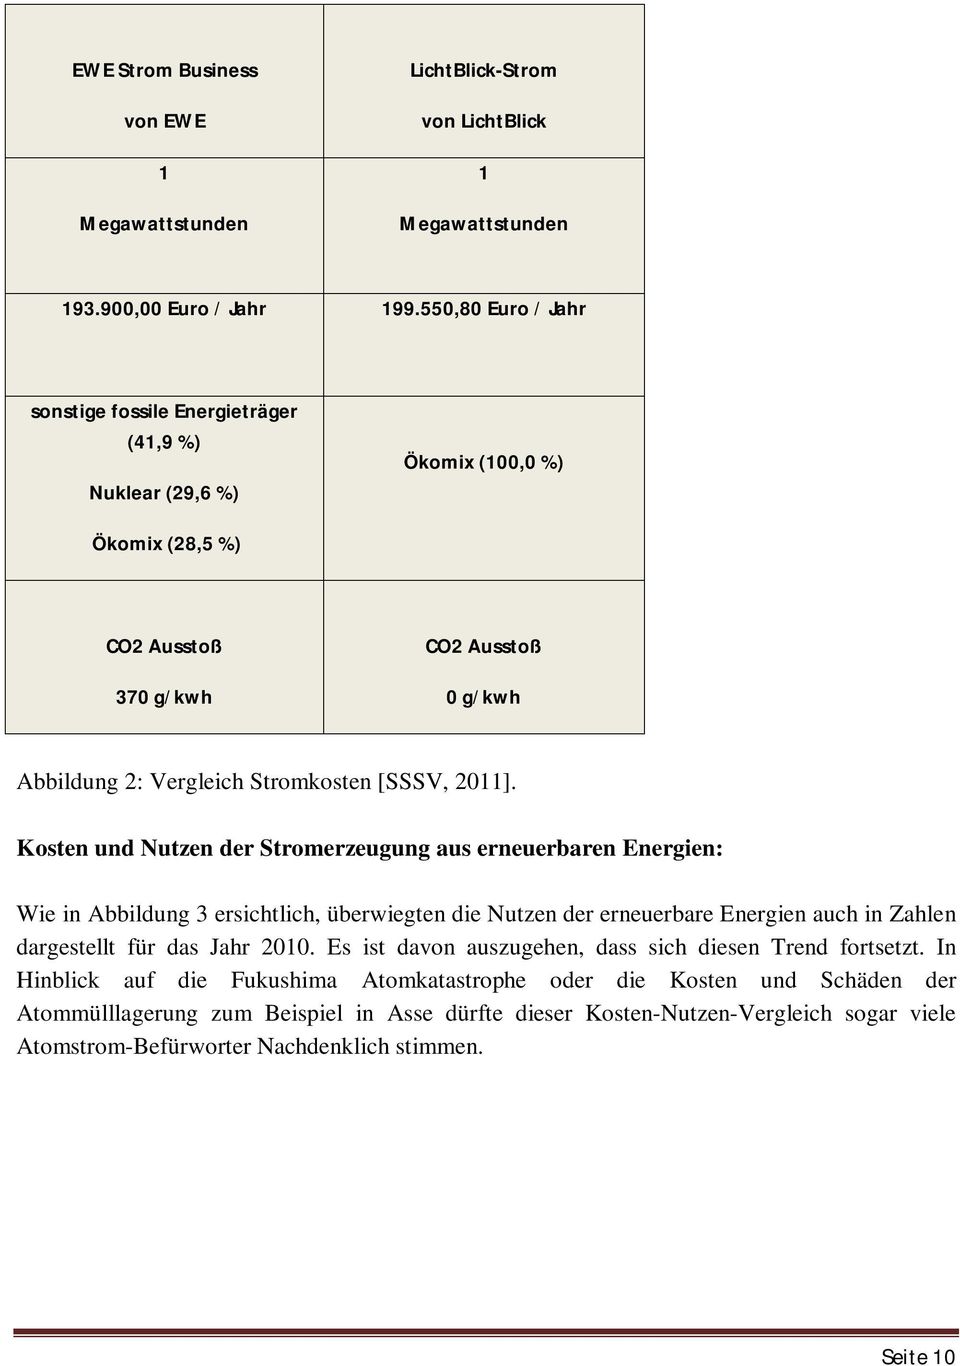 2011]. Kosten und Nutzen der Stromerzeugung aus erneuerbaren Energien: Wie in Abbildung 3 ersichtlich, überwiegten die Nutzen der erneuerbare Energien auch in Zahlen dargestellt für das Jahr 2010.